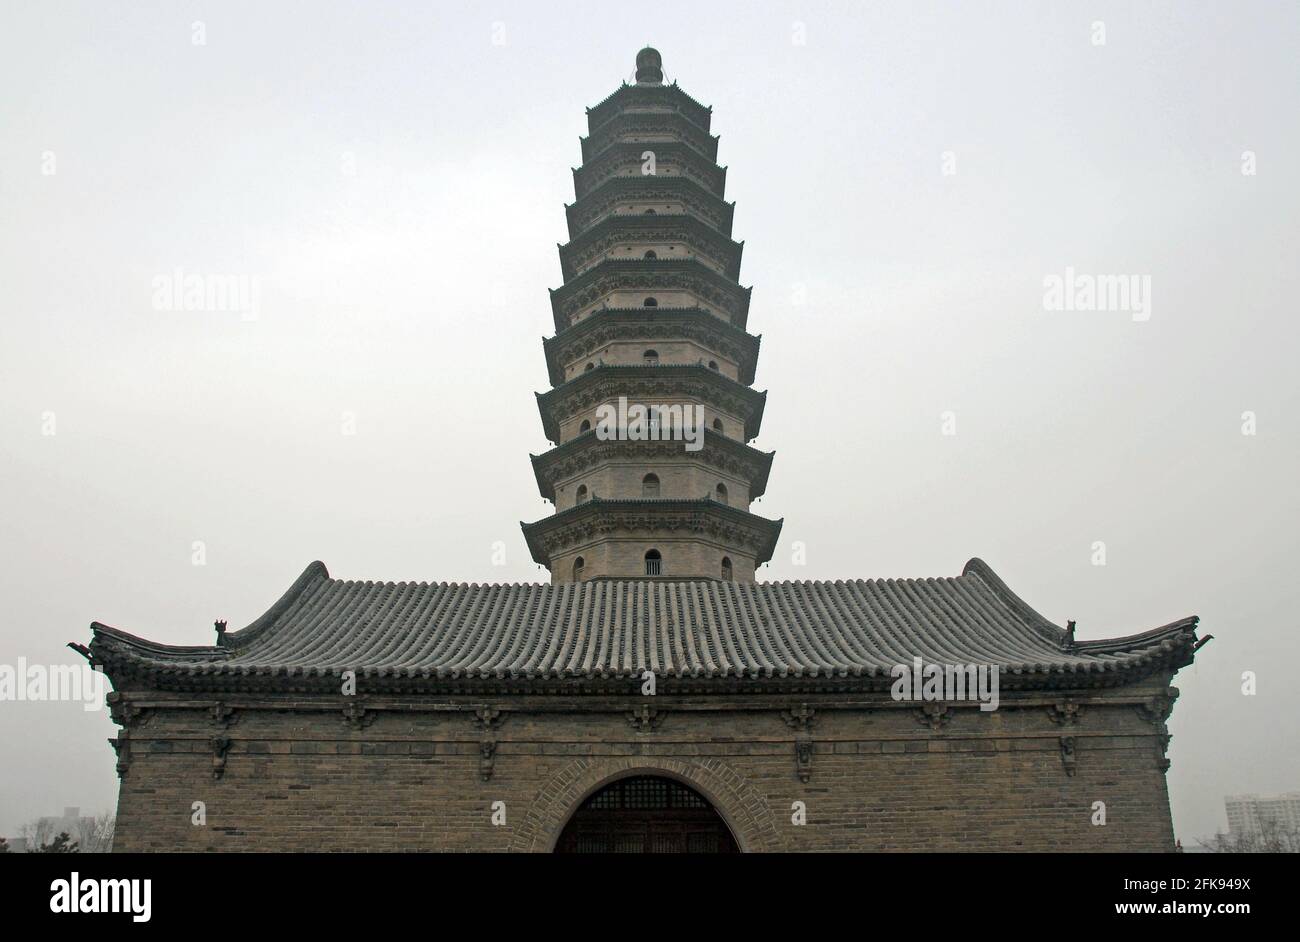 Une des célèbres pagodes du Temple de la Pagode jumelle (Temple Yongzuo) à Taiyuan, Shanxi, Chine. Les pagodes sont l'un des principaux points de repère de Taiyuan. Banque D'Images